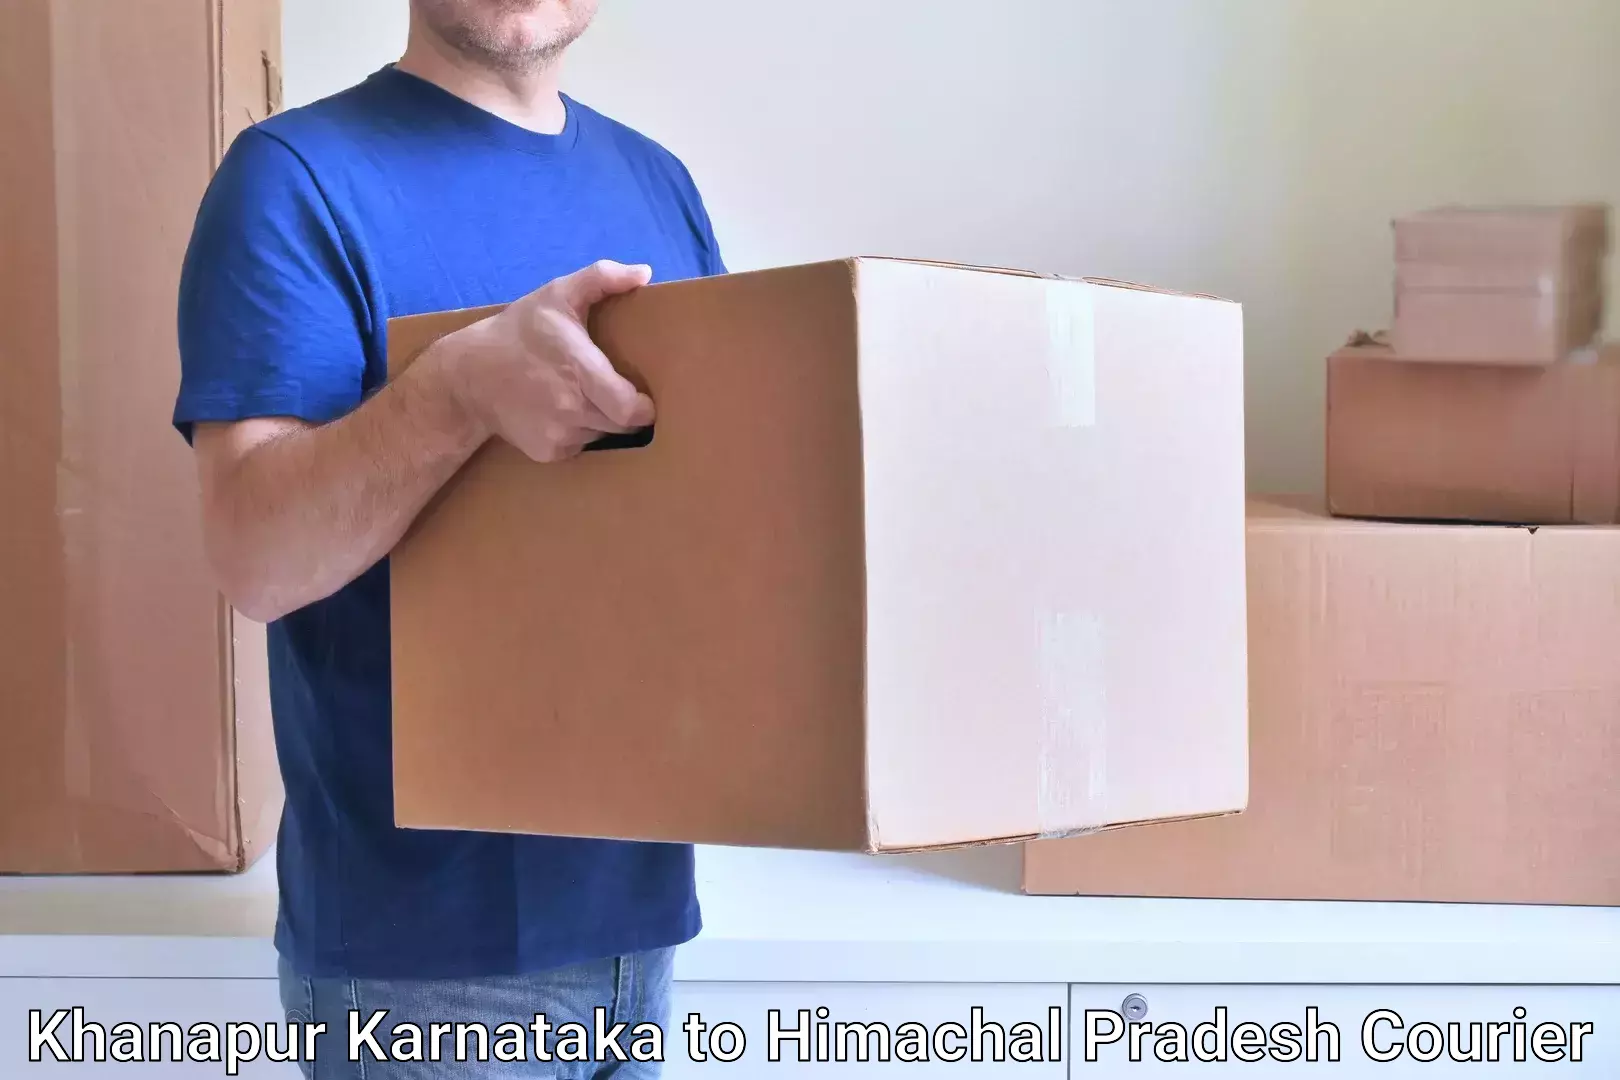 Courier dispatch services Khanapur Karnataka to Sundla